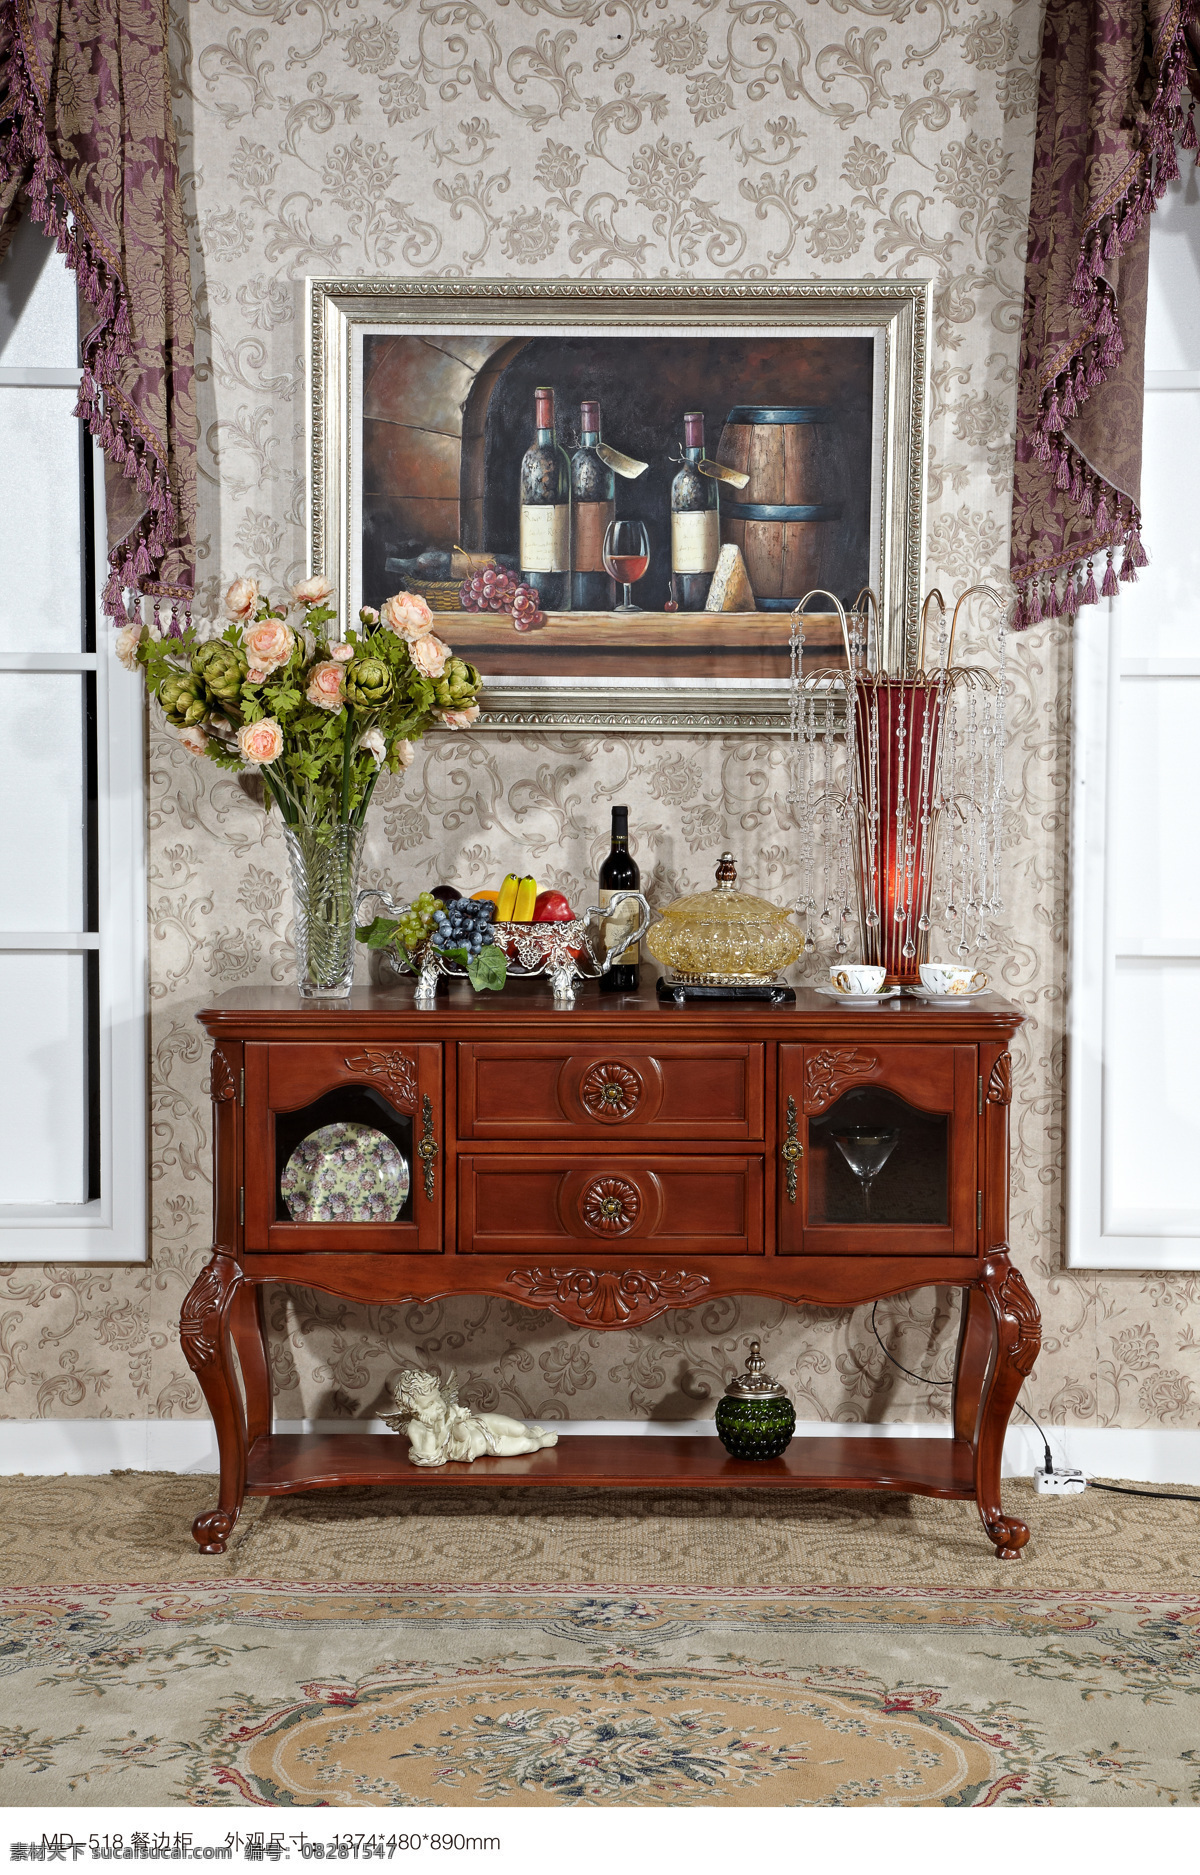 美式家具 美式 家具 家居 沙发 窗帘 室内设计 地毯 画 餐边柜 室内摄影 建筑园林